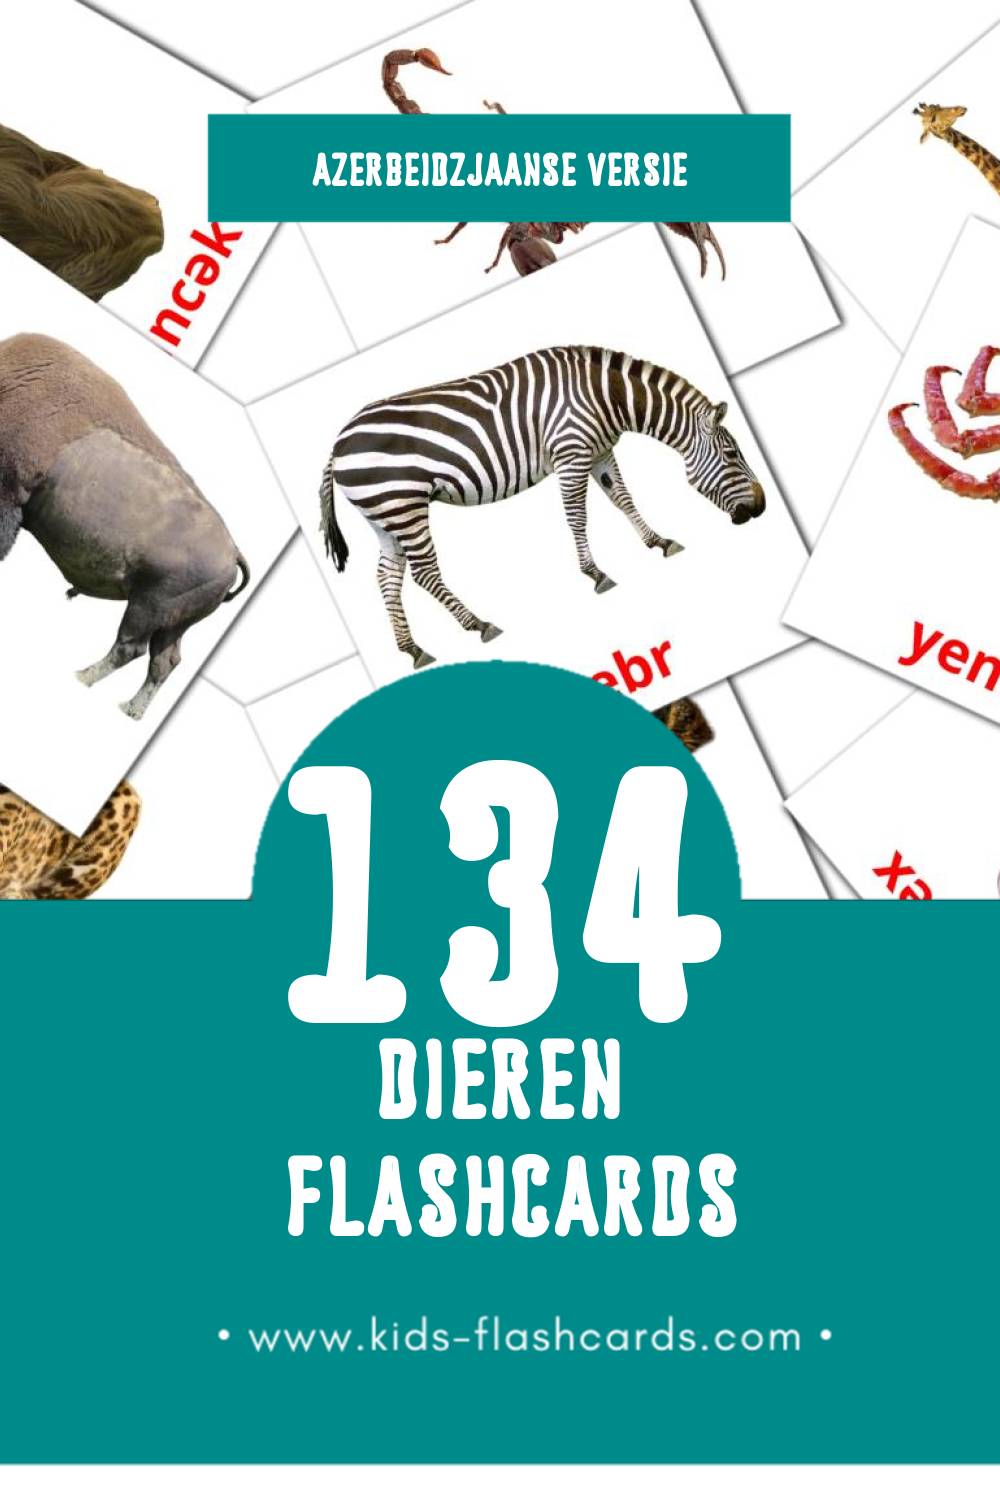 Visuele Ашвырква Flashcards voor Kleuters (134 kaarten in het Azerbeidzjaans)